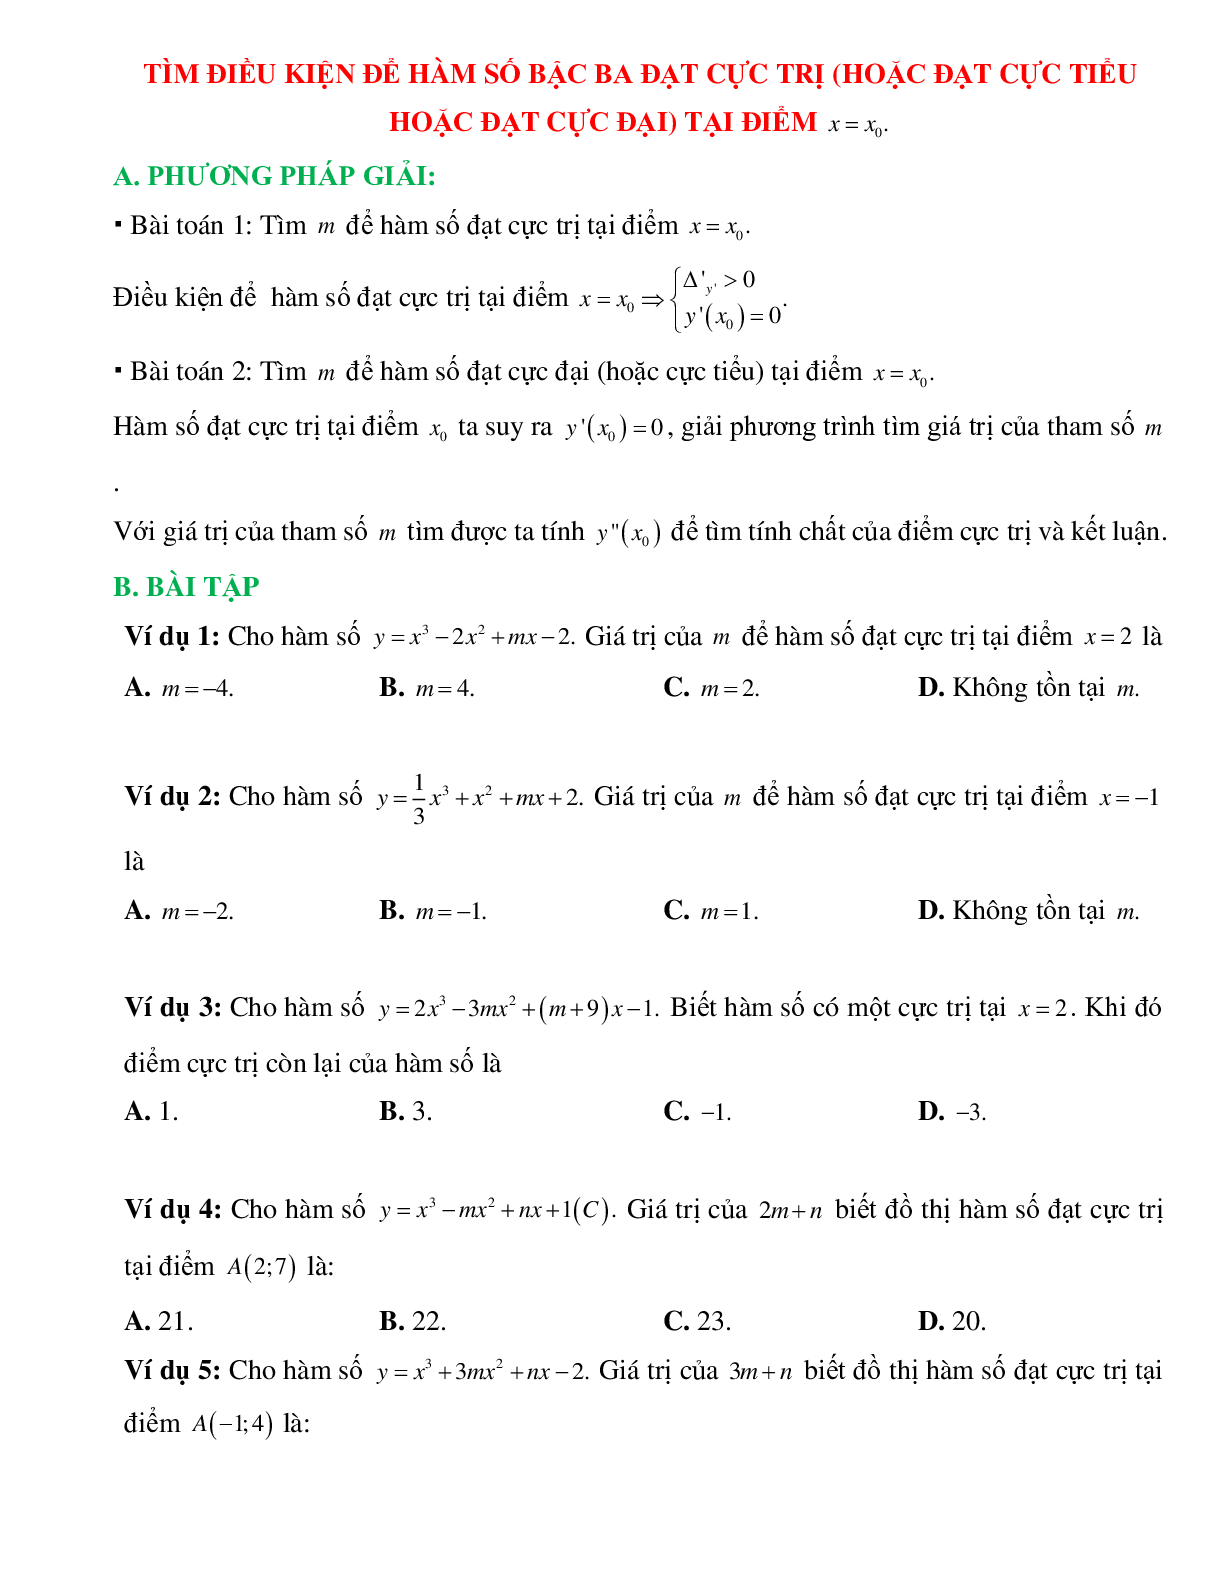 Tìm điều kiện để hàm số bậc ba đạt cực trị hoặc cực tiểu tại x = xo (trang 1)